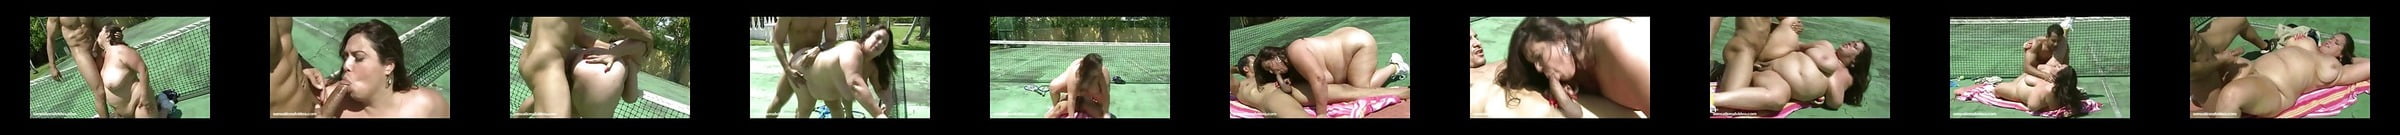 出演女優・男優 Tennis ポルノビデオ 3 Xhamster